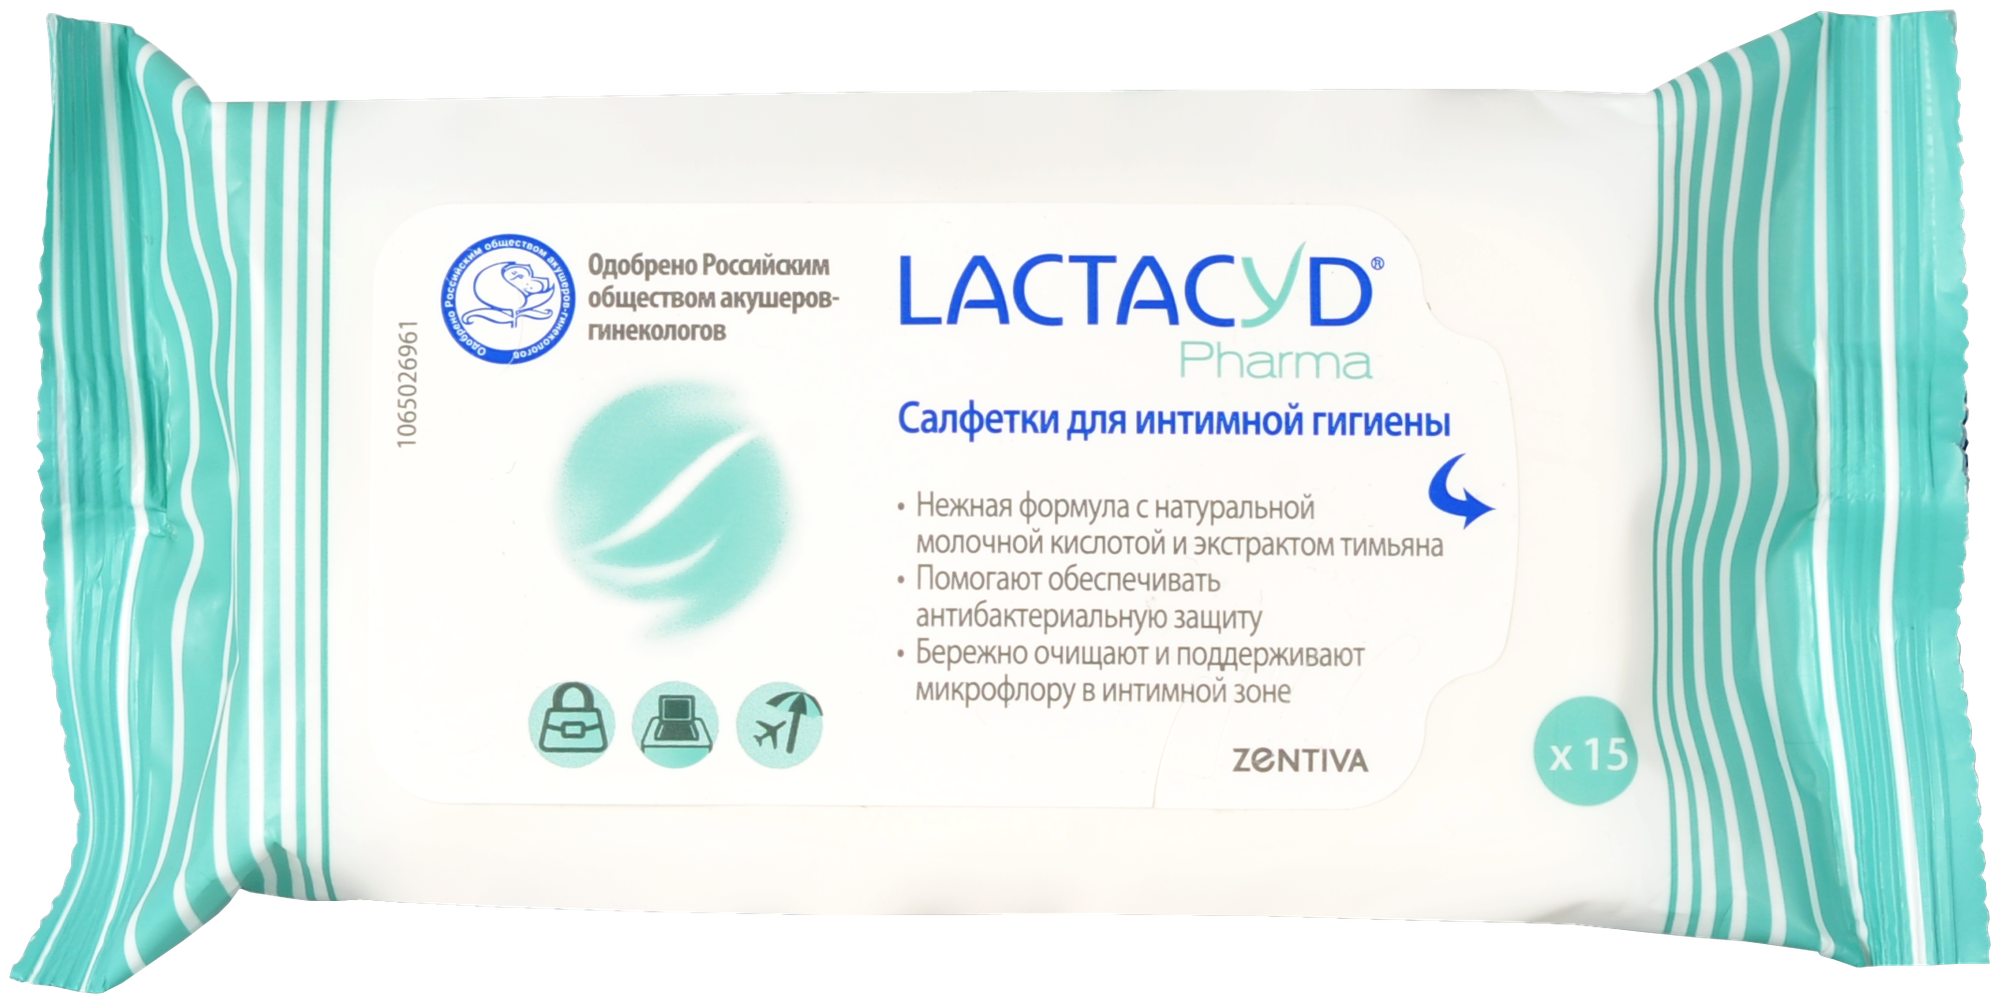 Lactacyd Pharma салфетки с тимьяном для интимной гигиены 15 шт (новинка)